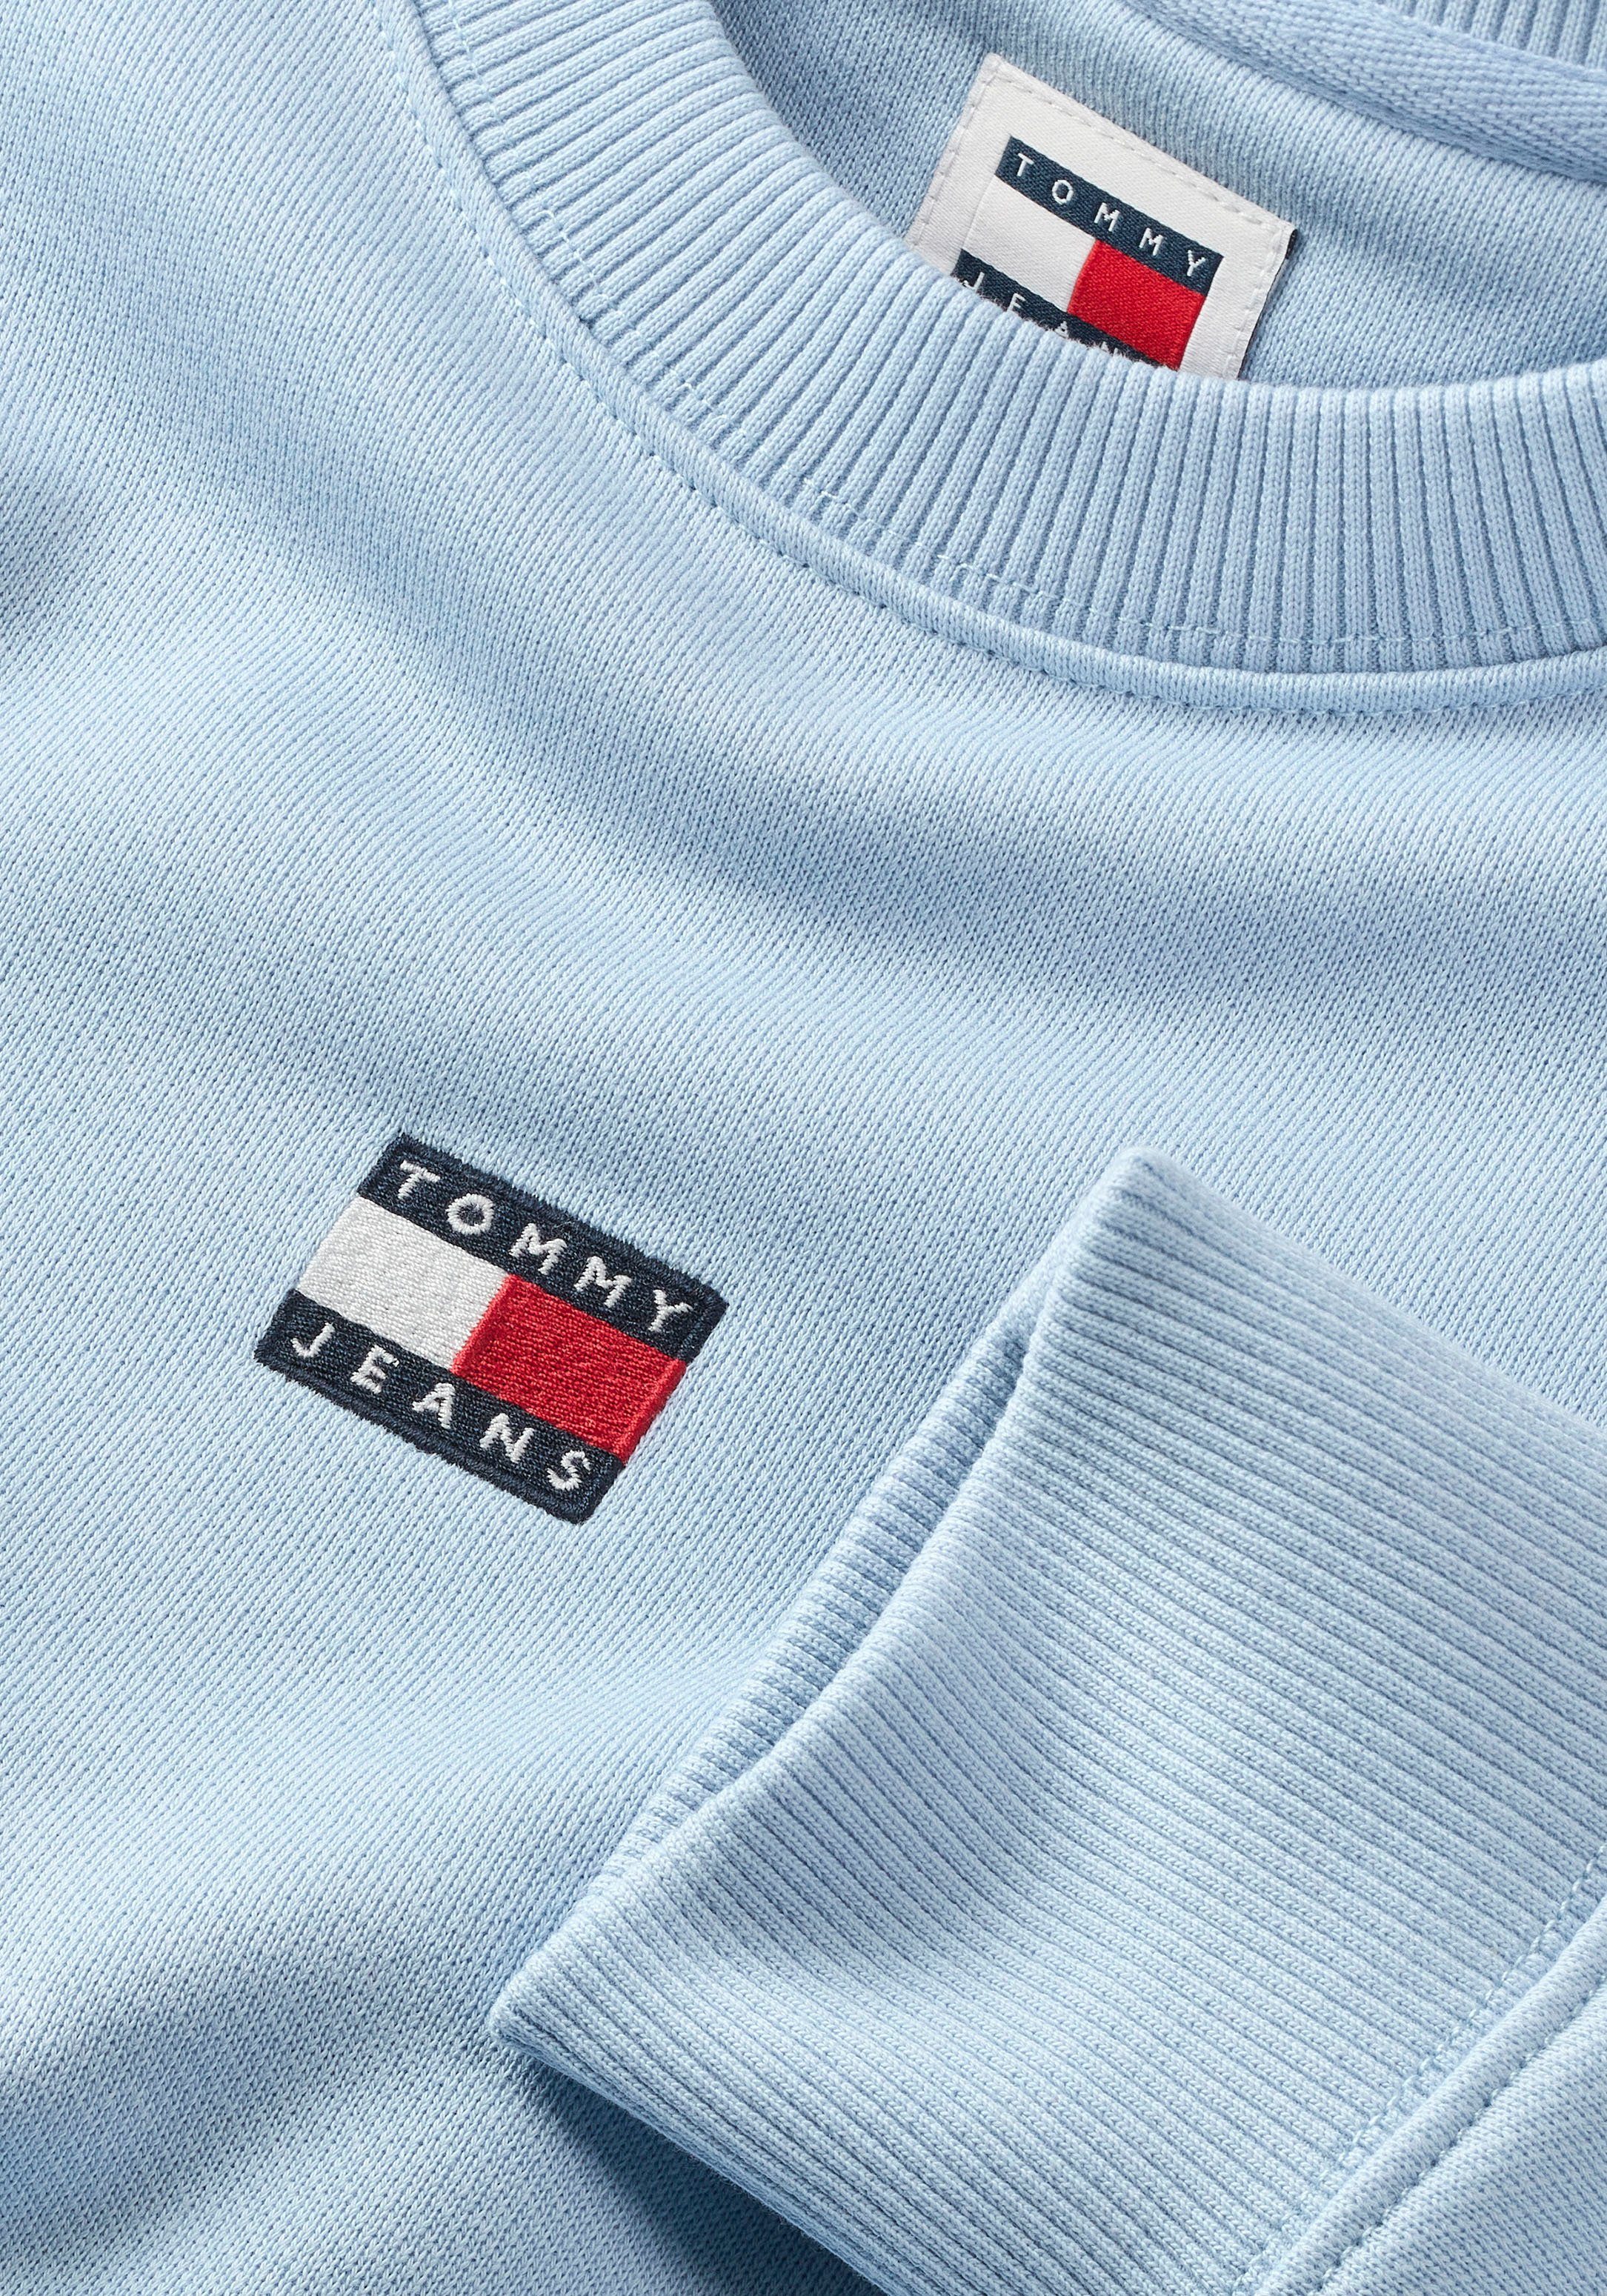 Tommy Jeans Sweatshirt und Breezy Dropshoulder-Design Frontlogo mit Blue